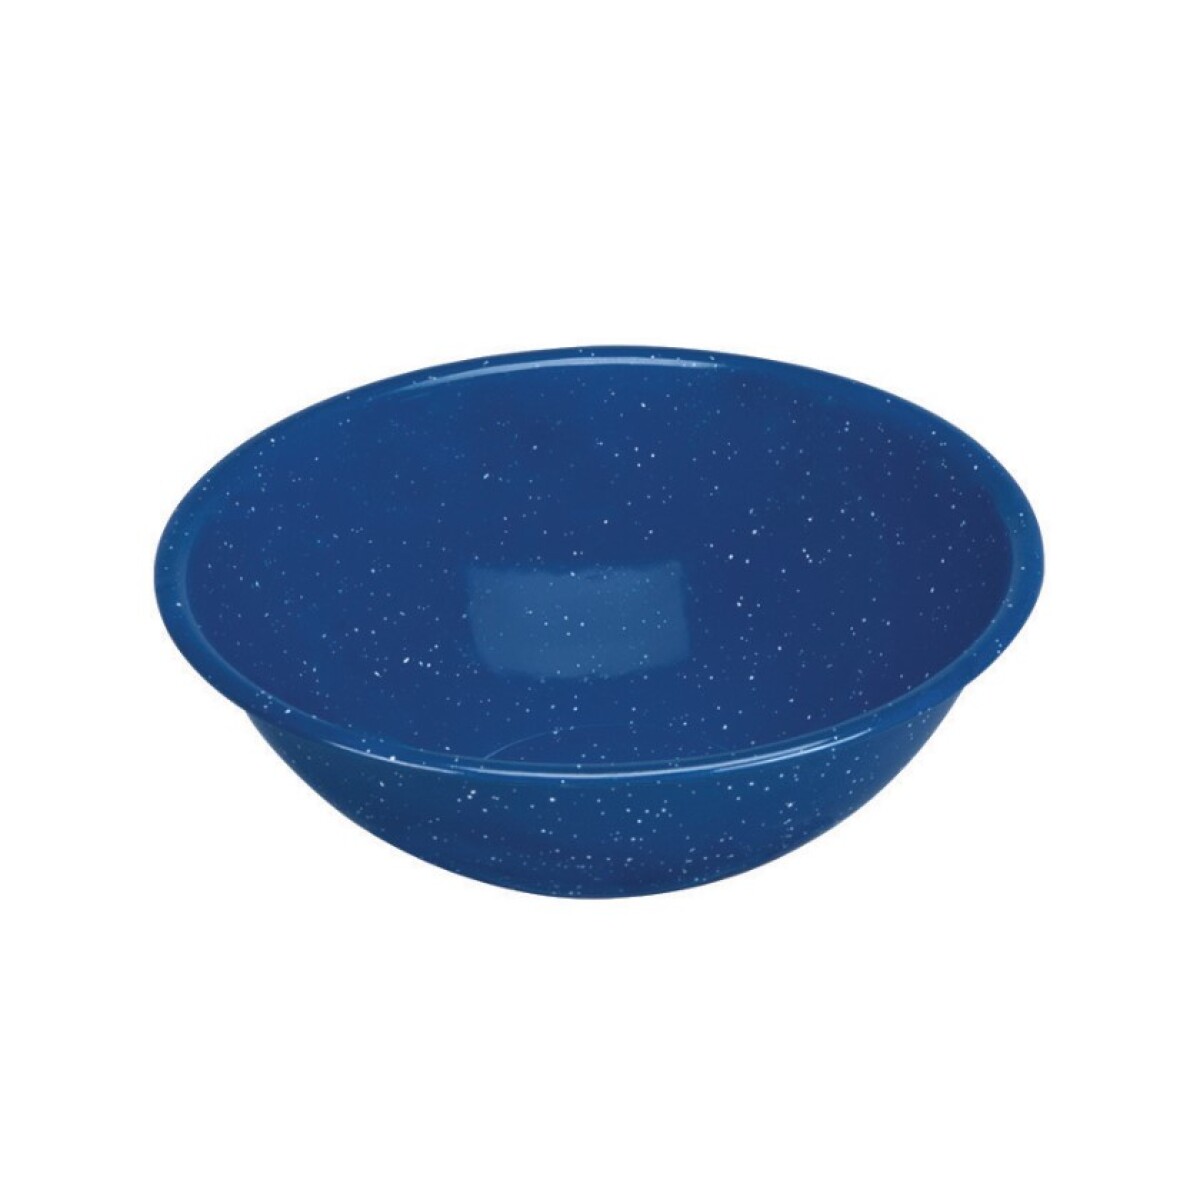 Bowl Acero Esmaltado 500ml Azul 